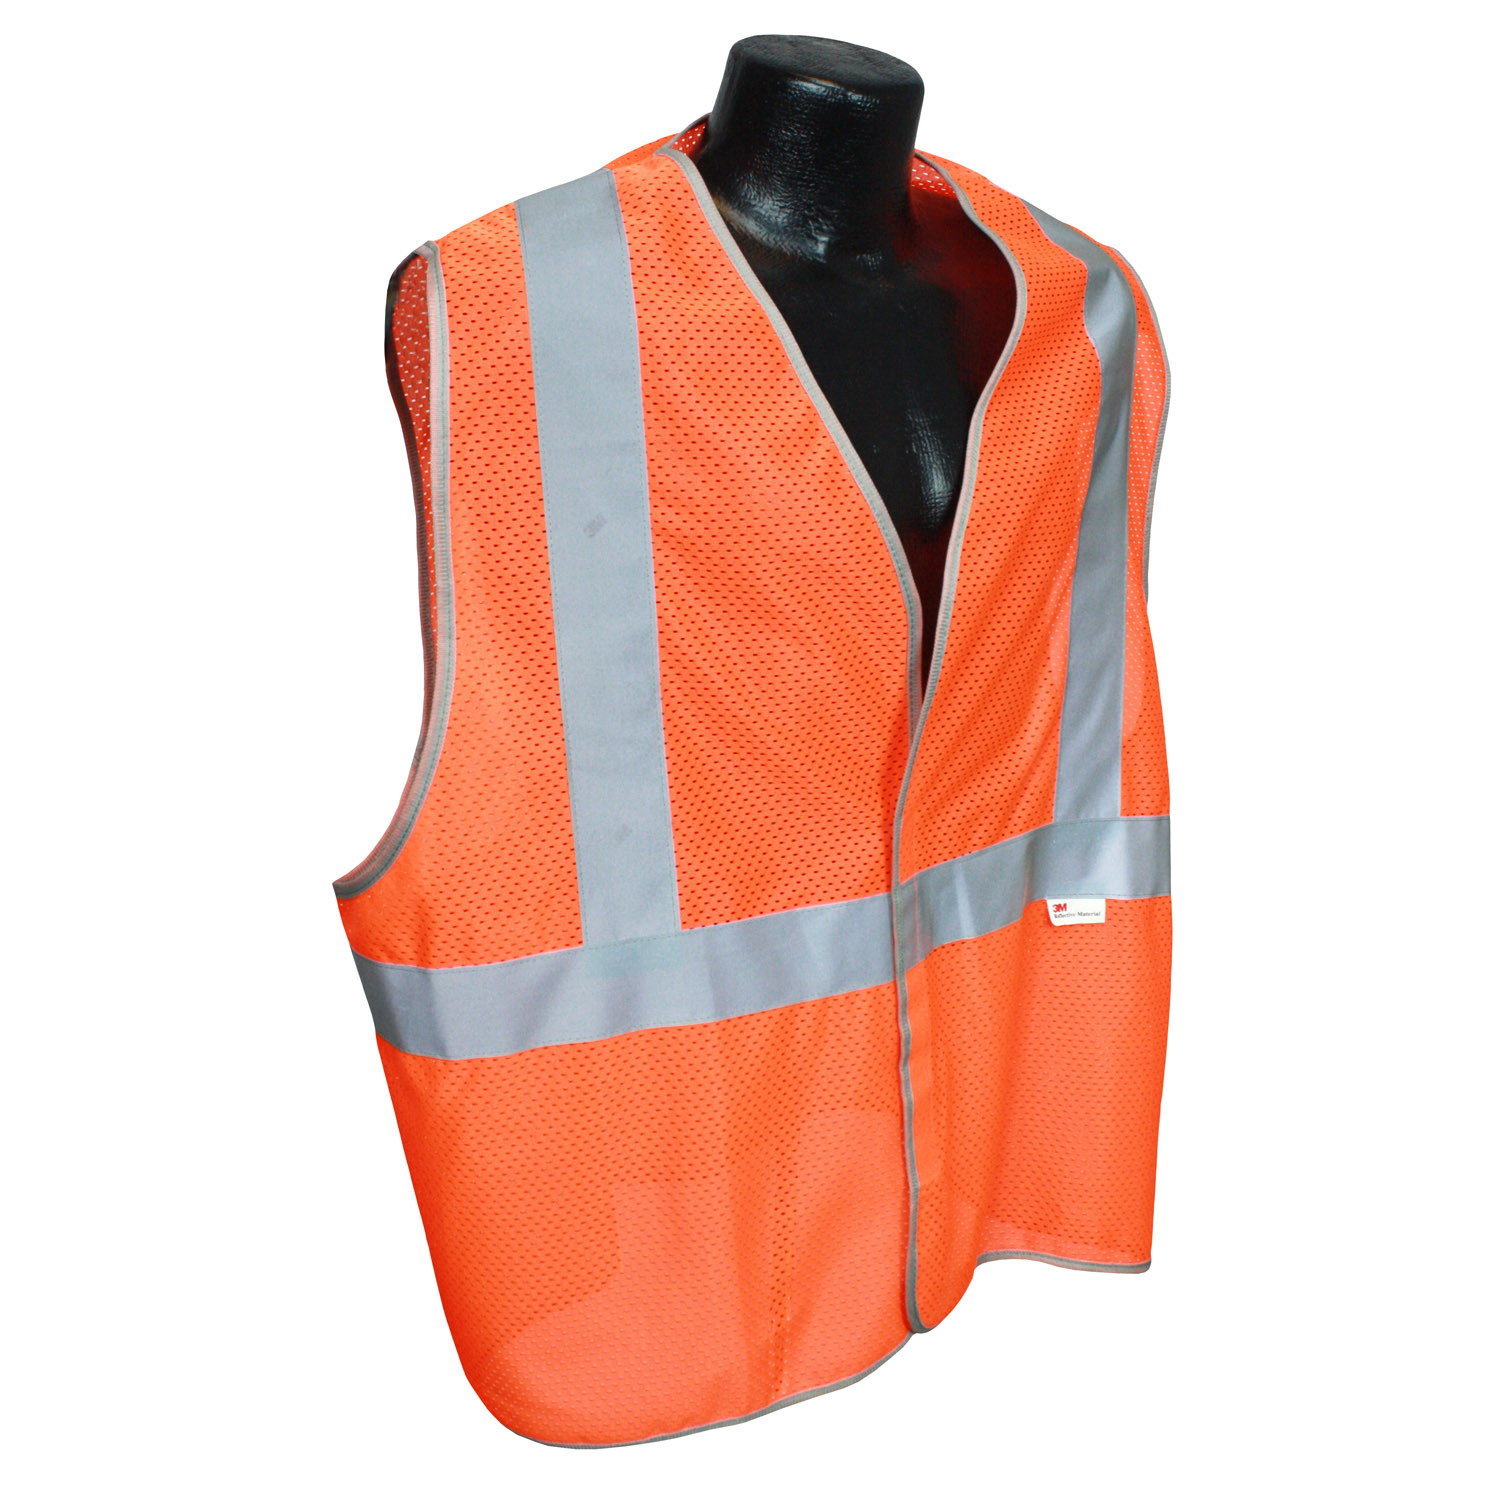 5ANSI-PC Type R Class 2 Safety Vest - 3.5oz Poly Mesh - Orange - Size 3X - Safety Vests